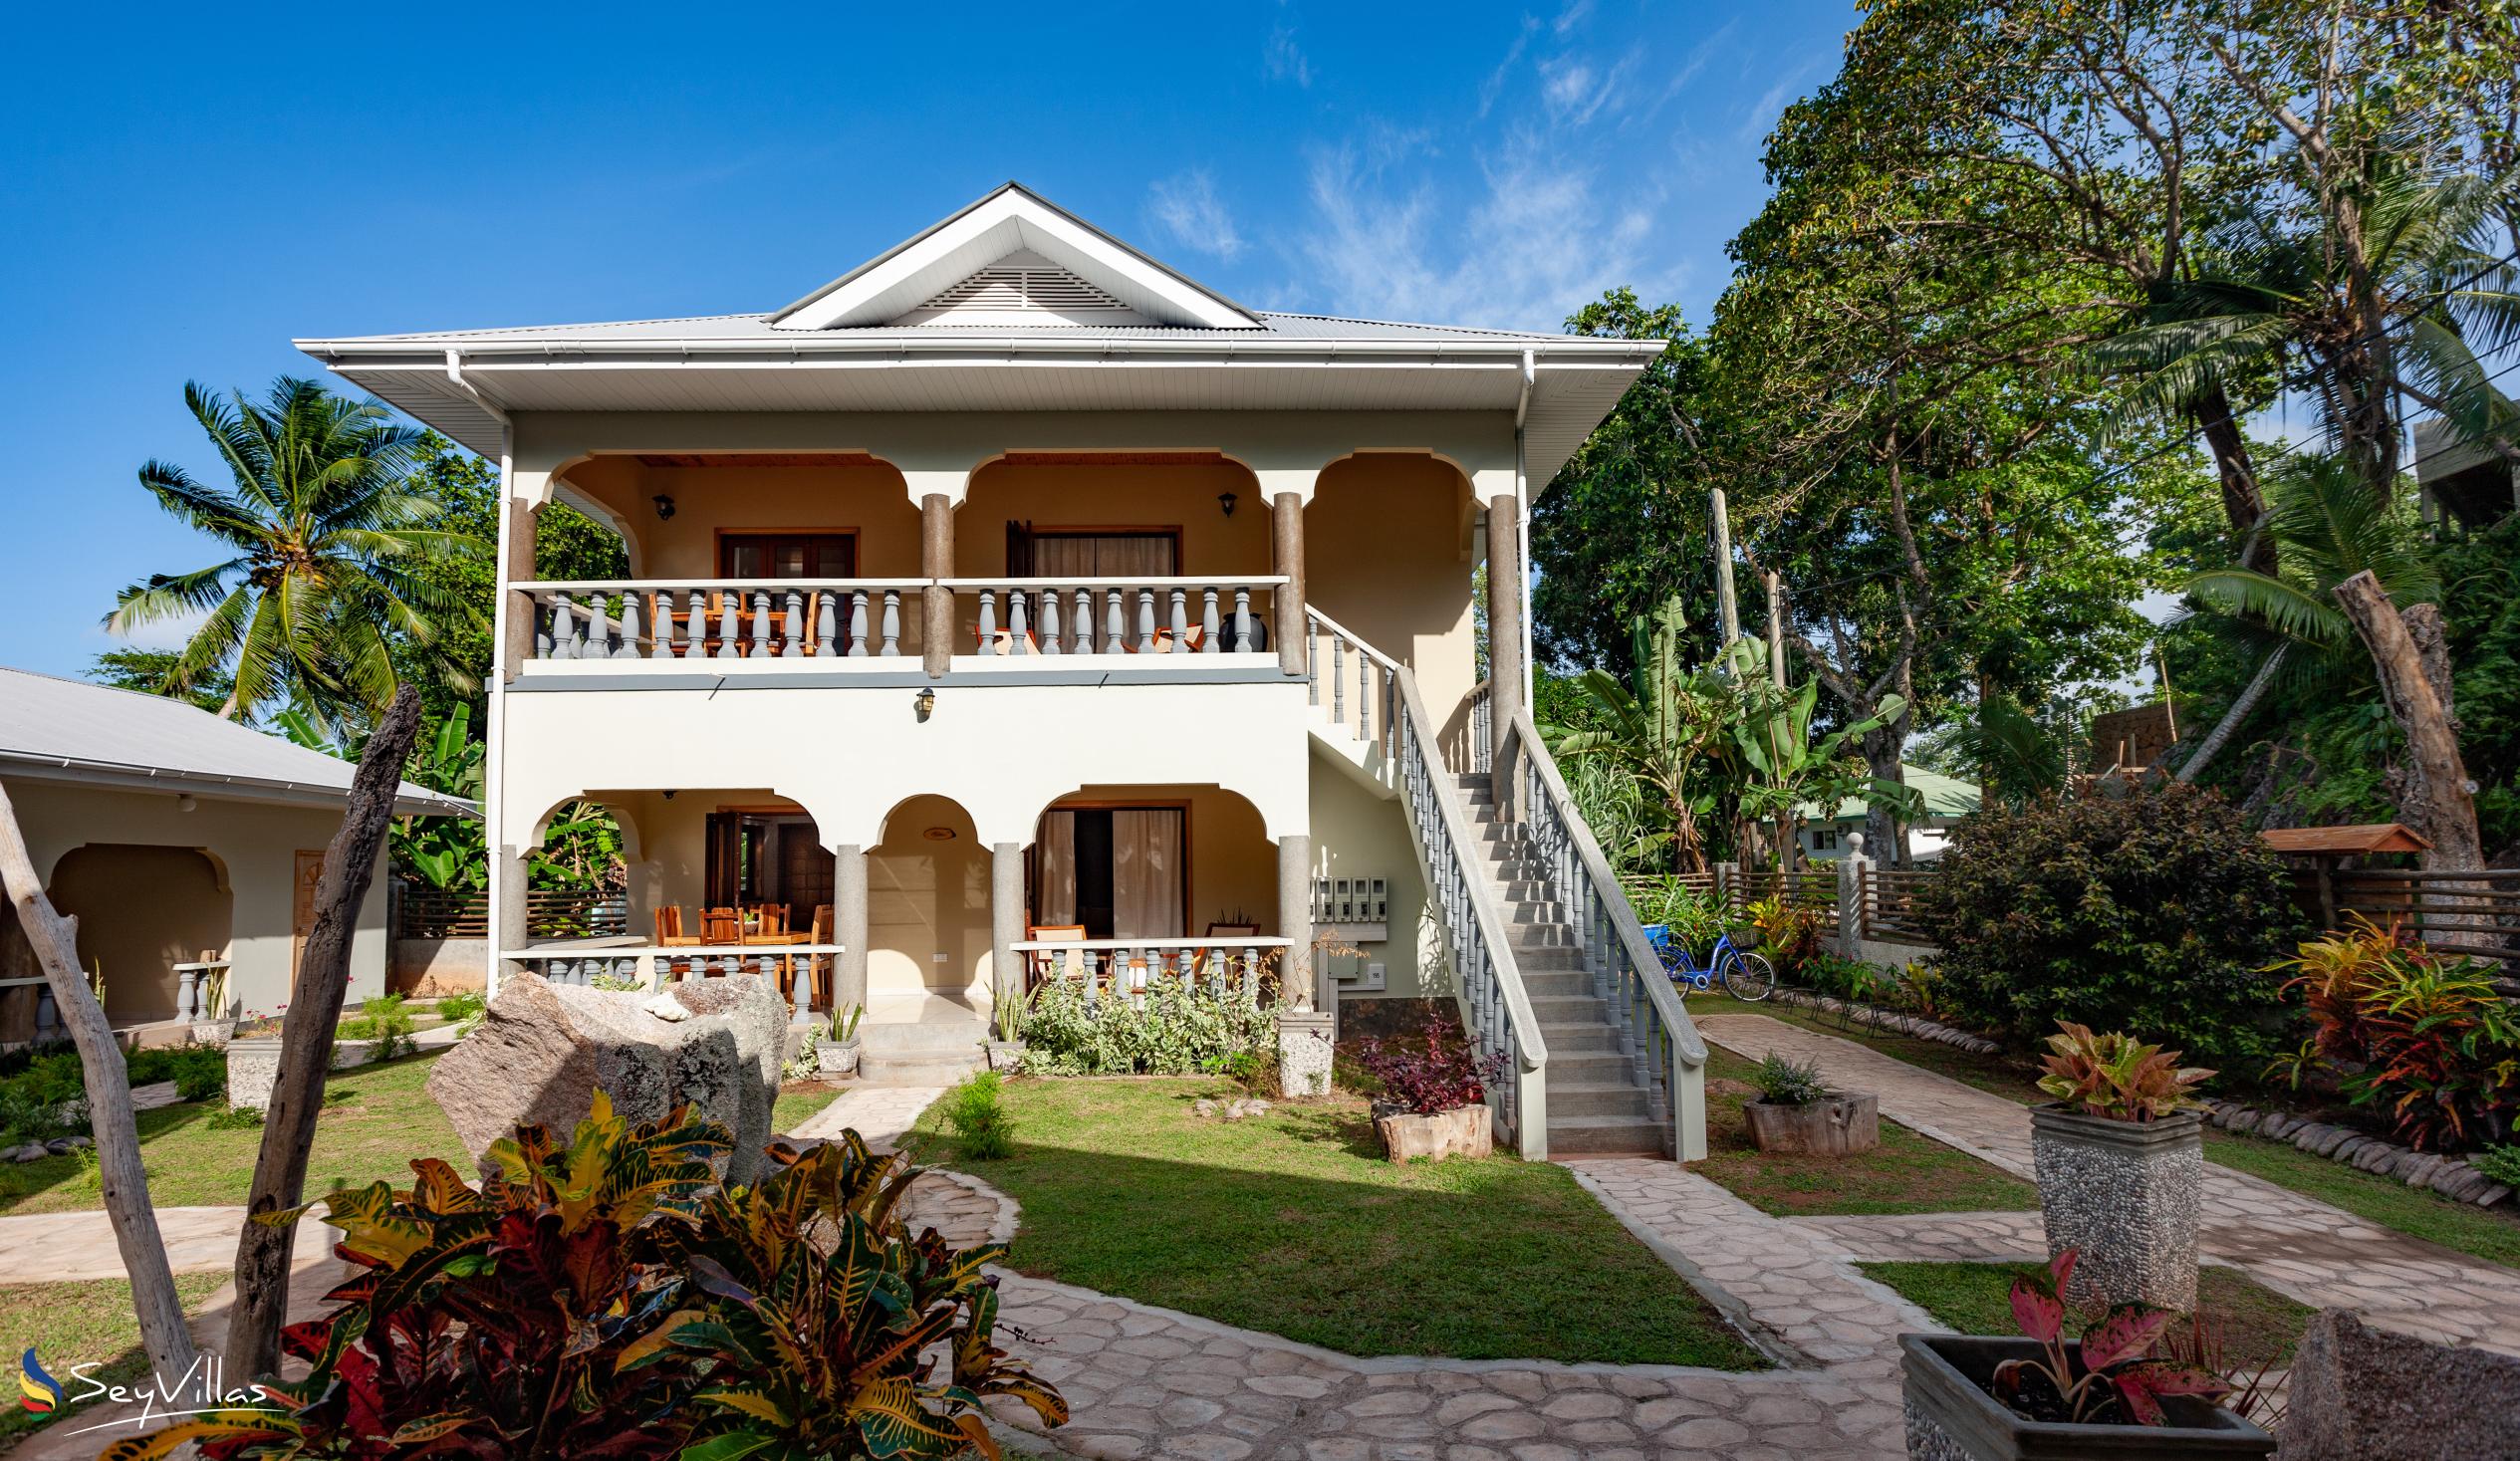 Foto 1: Maison Ed-Elle - Esterno - La Digue (Seychelles)